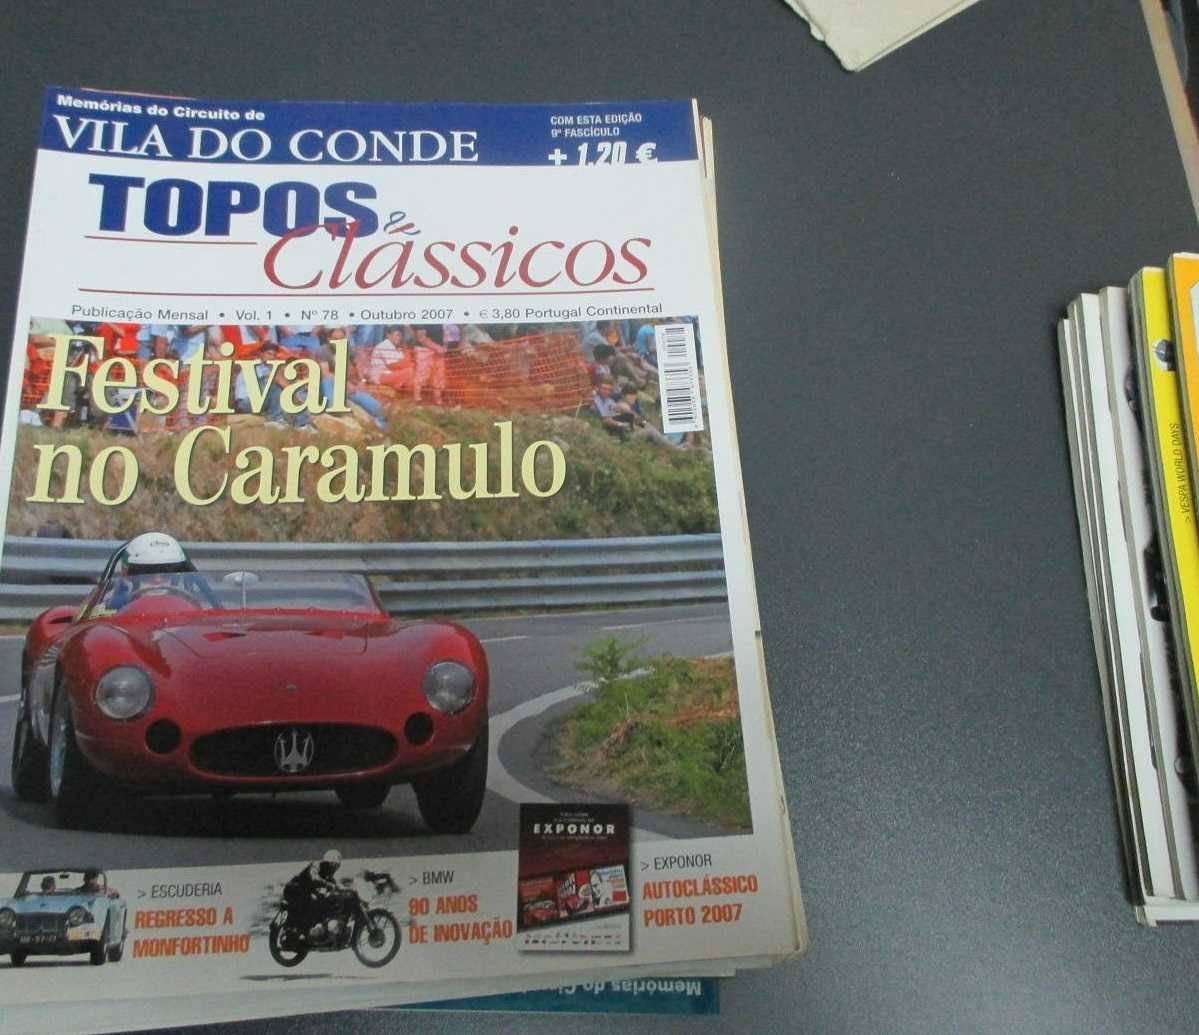 Topos & Clássicos 2002 a 2013 - revistas avulso